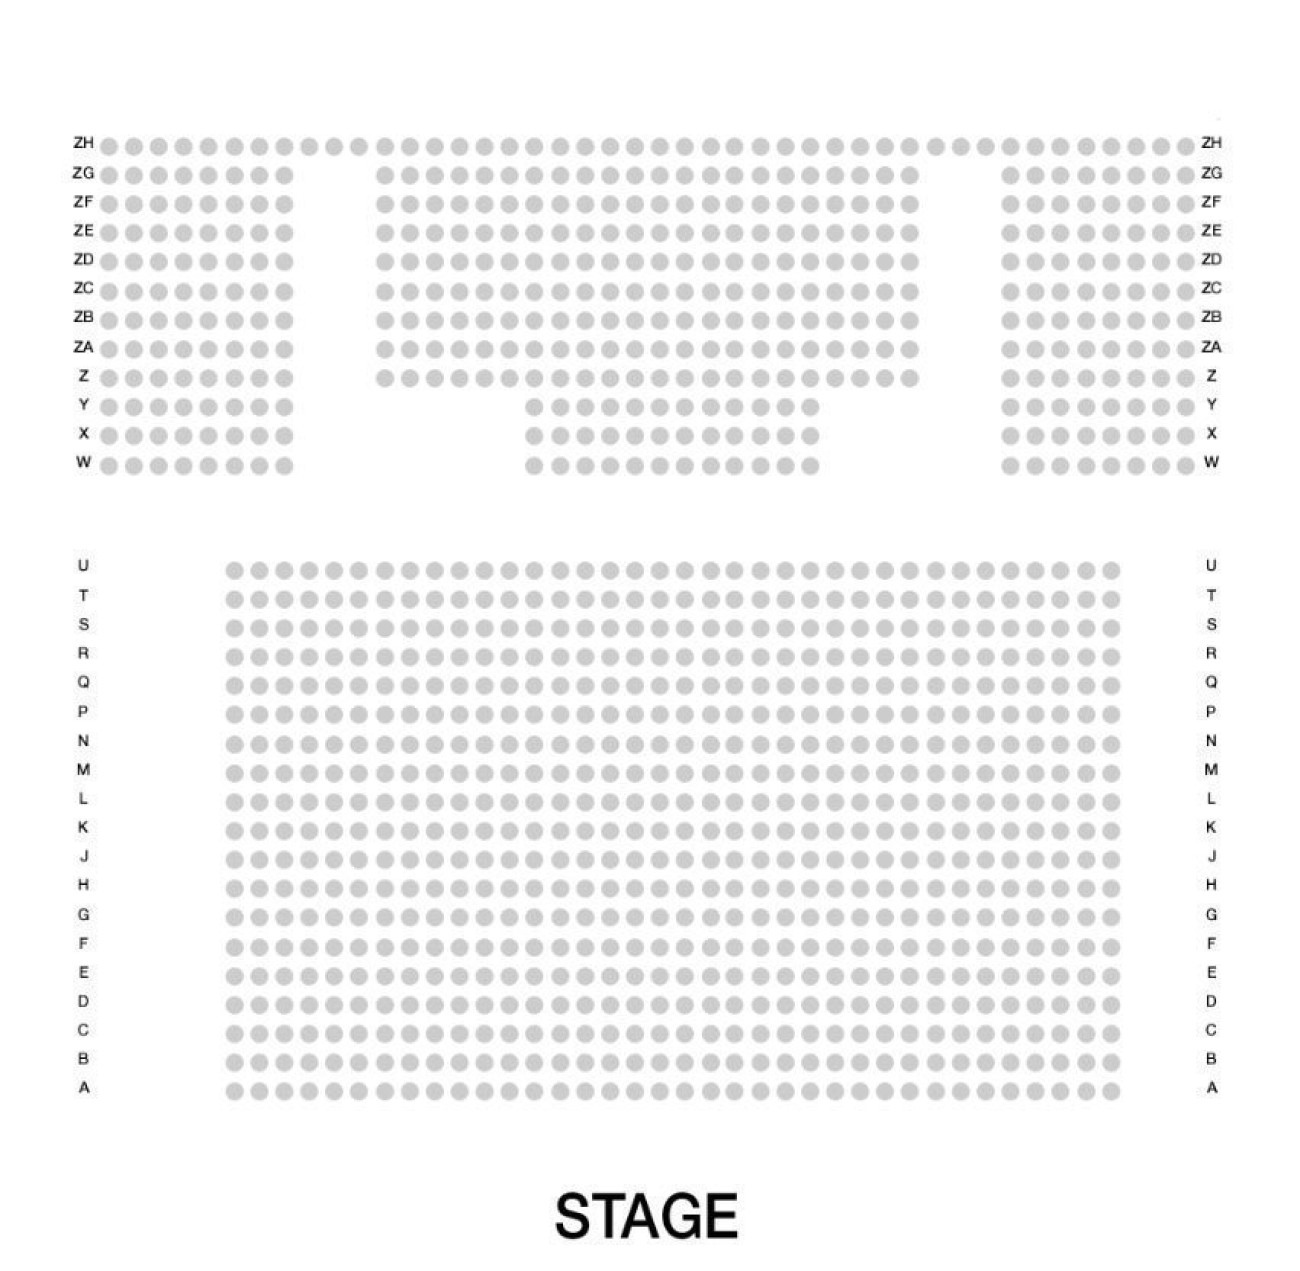 Troubadour White City Theatre Seating plan